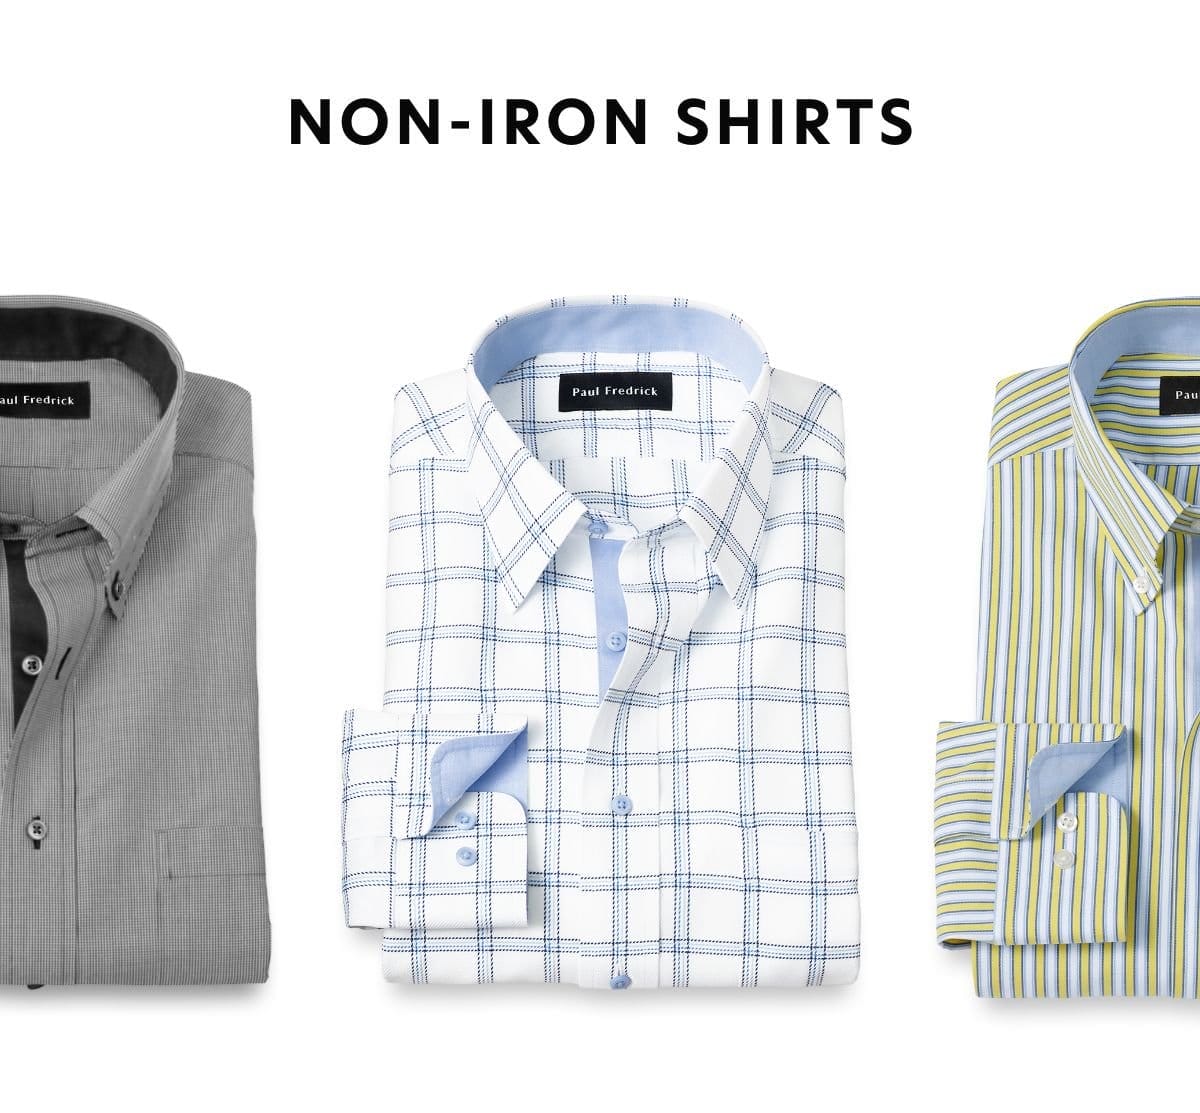 Non-Iron Shirts